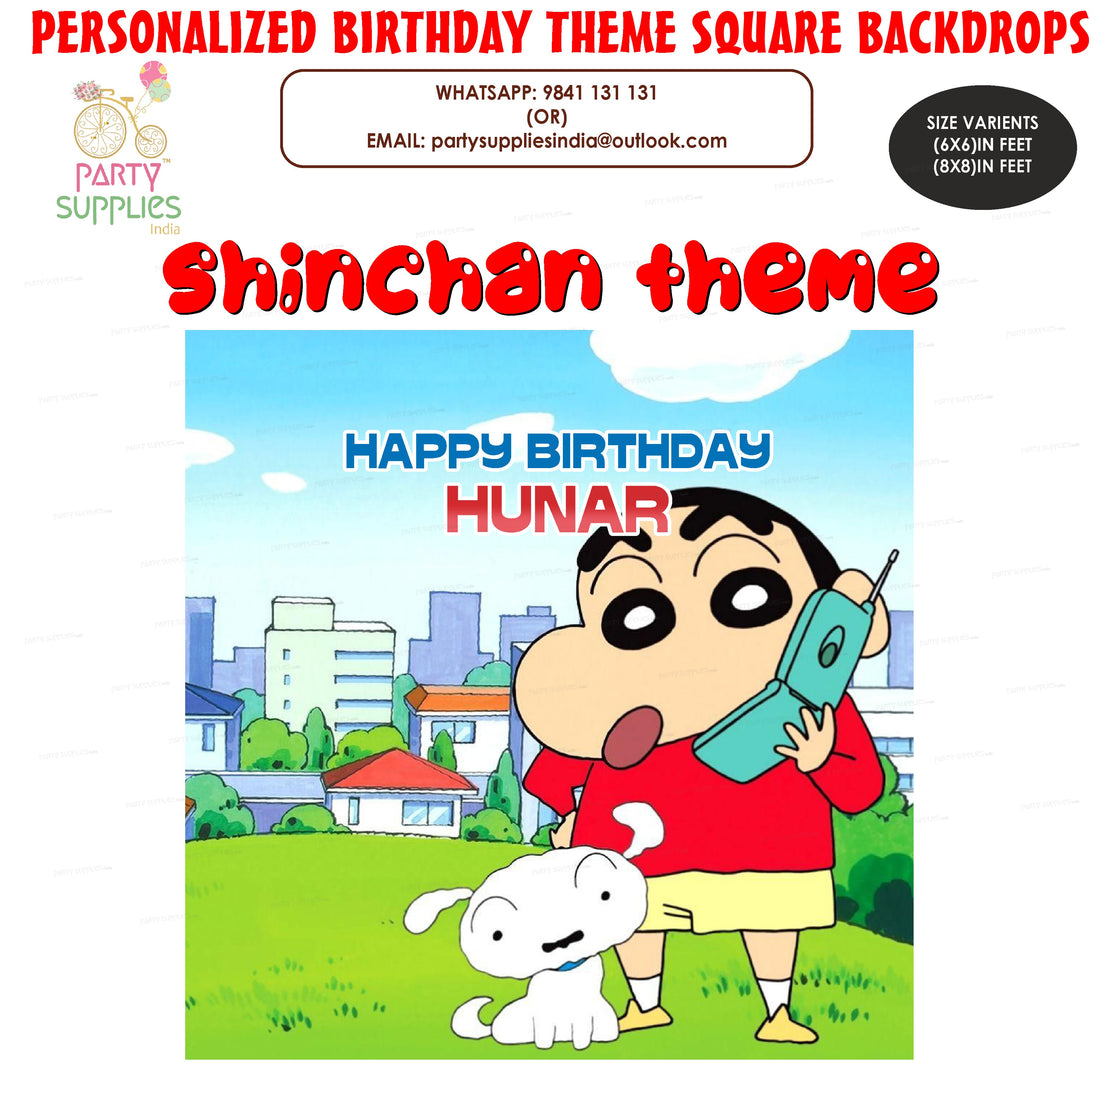 PSI Shinchan Theme Personalized Square Backdrop